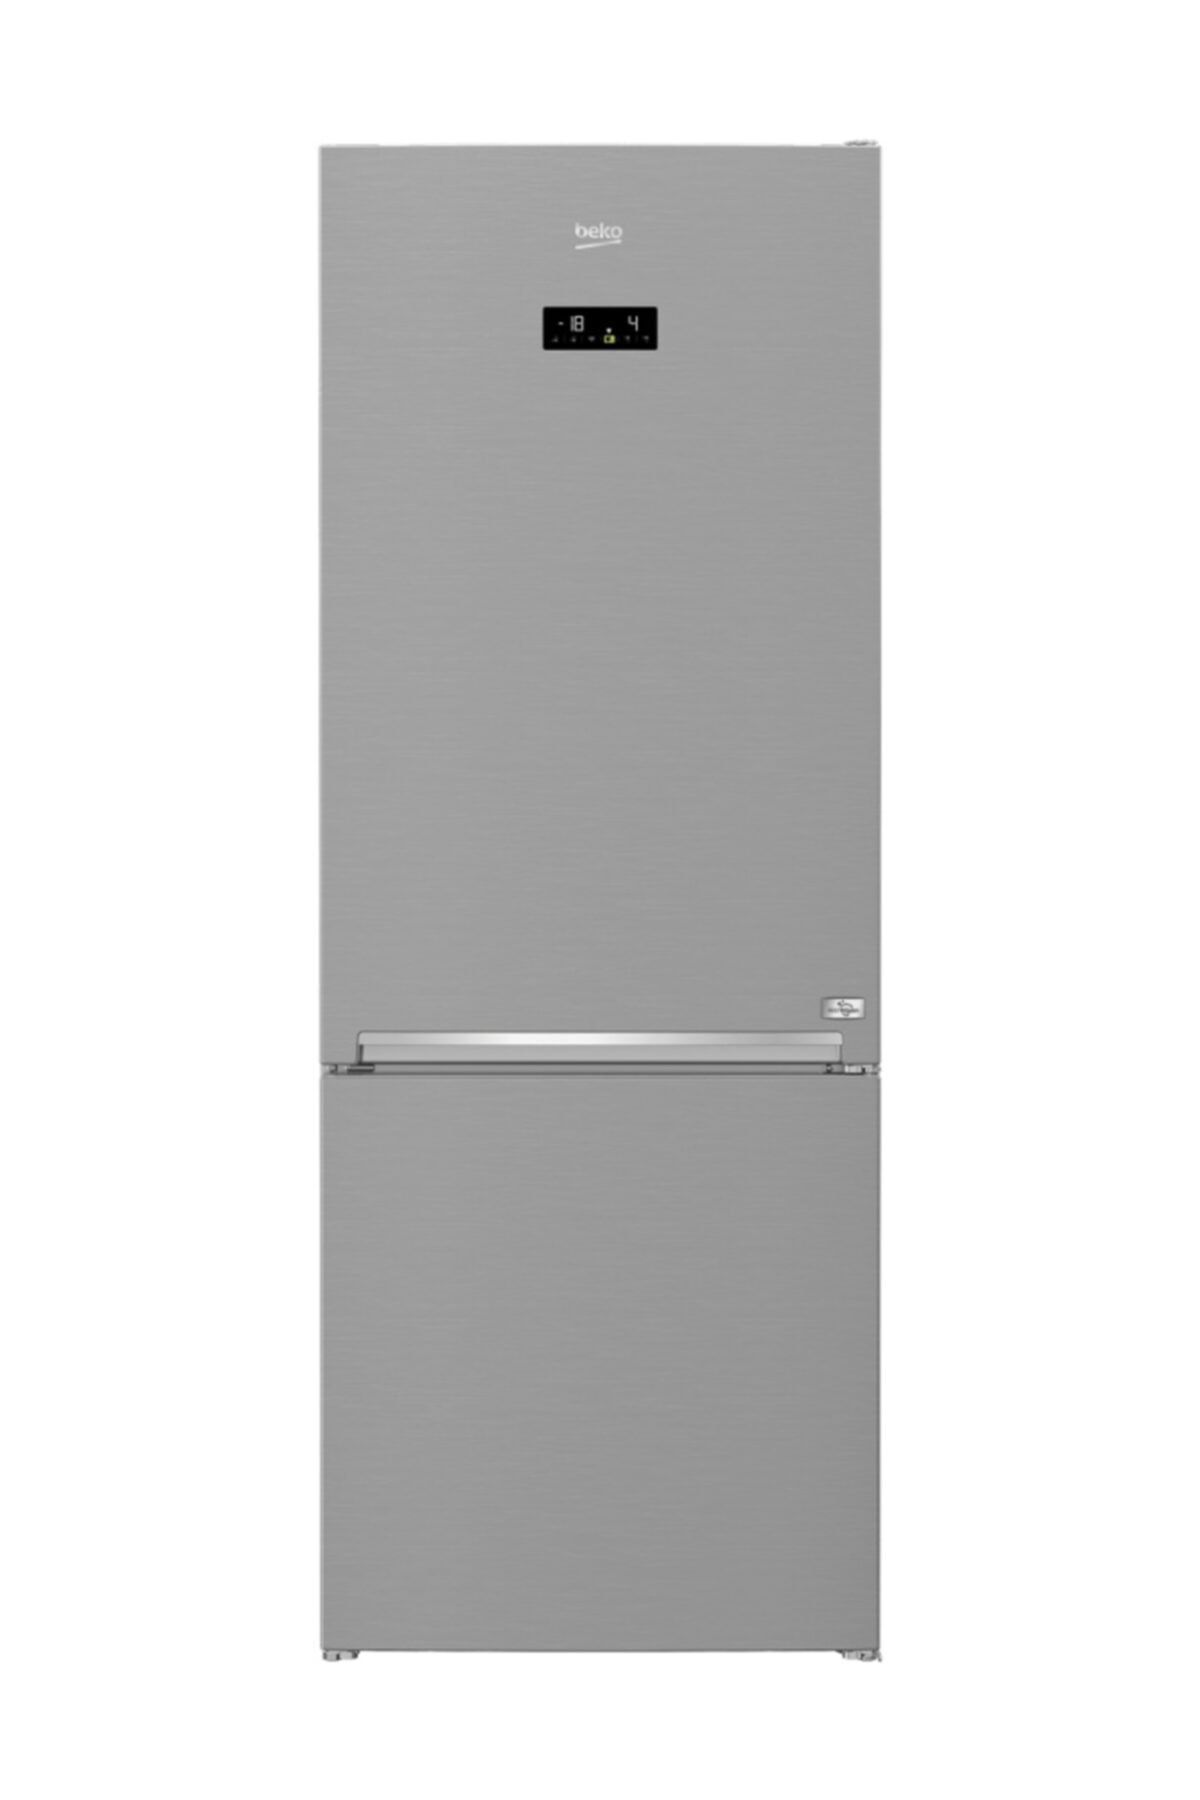 Beko Eı No Frost Buzdolabı A++ 560 Lt. Aktif Hijyen 670561